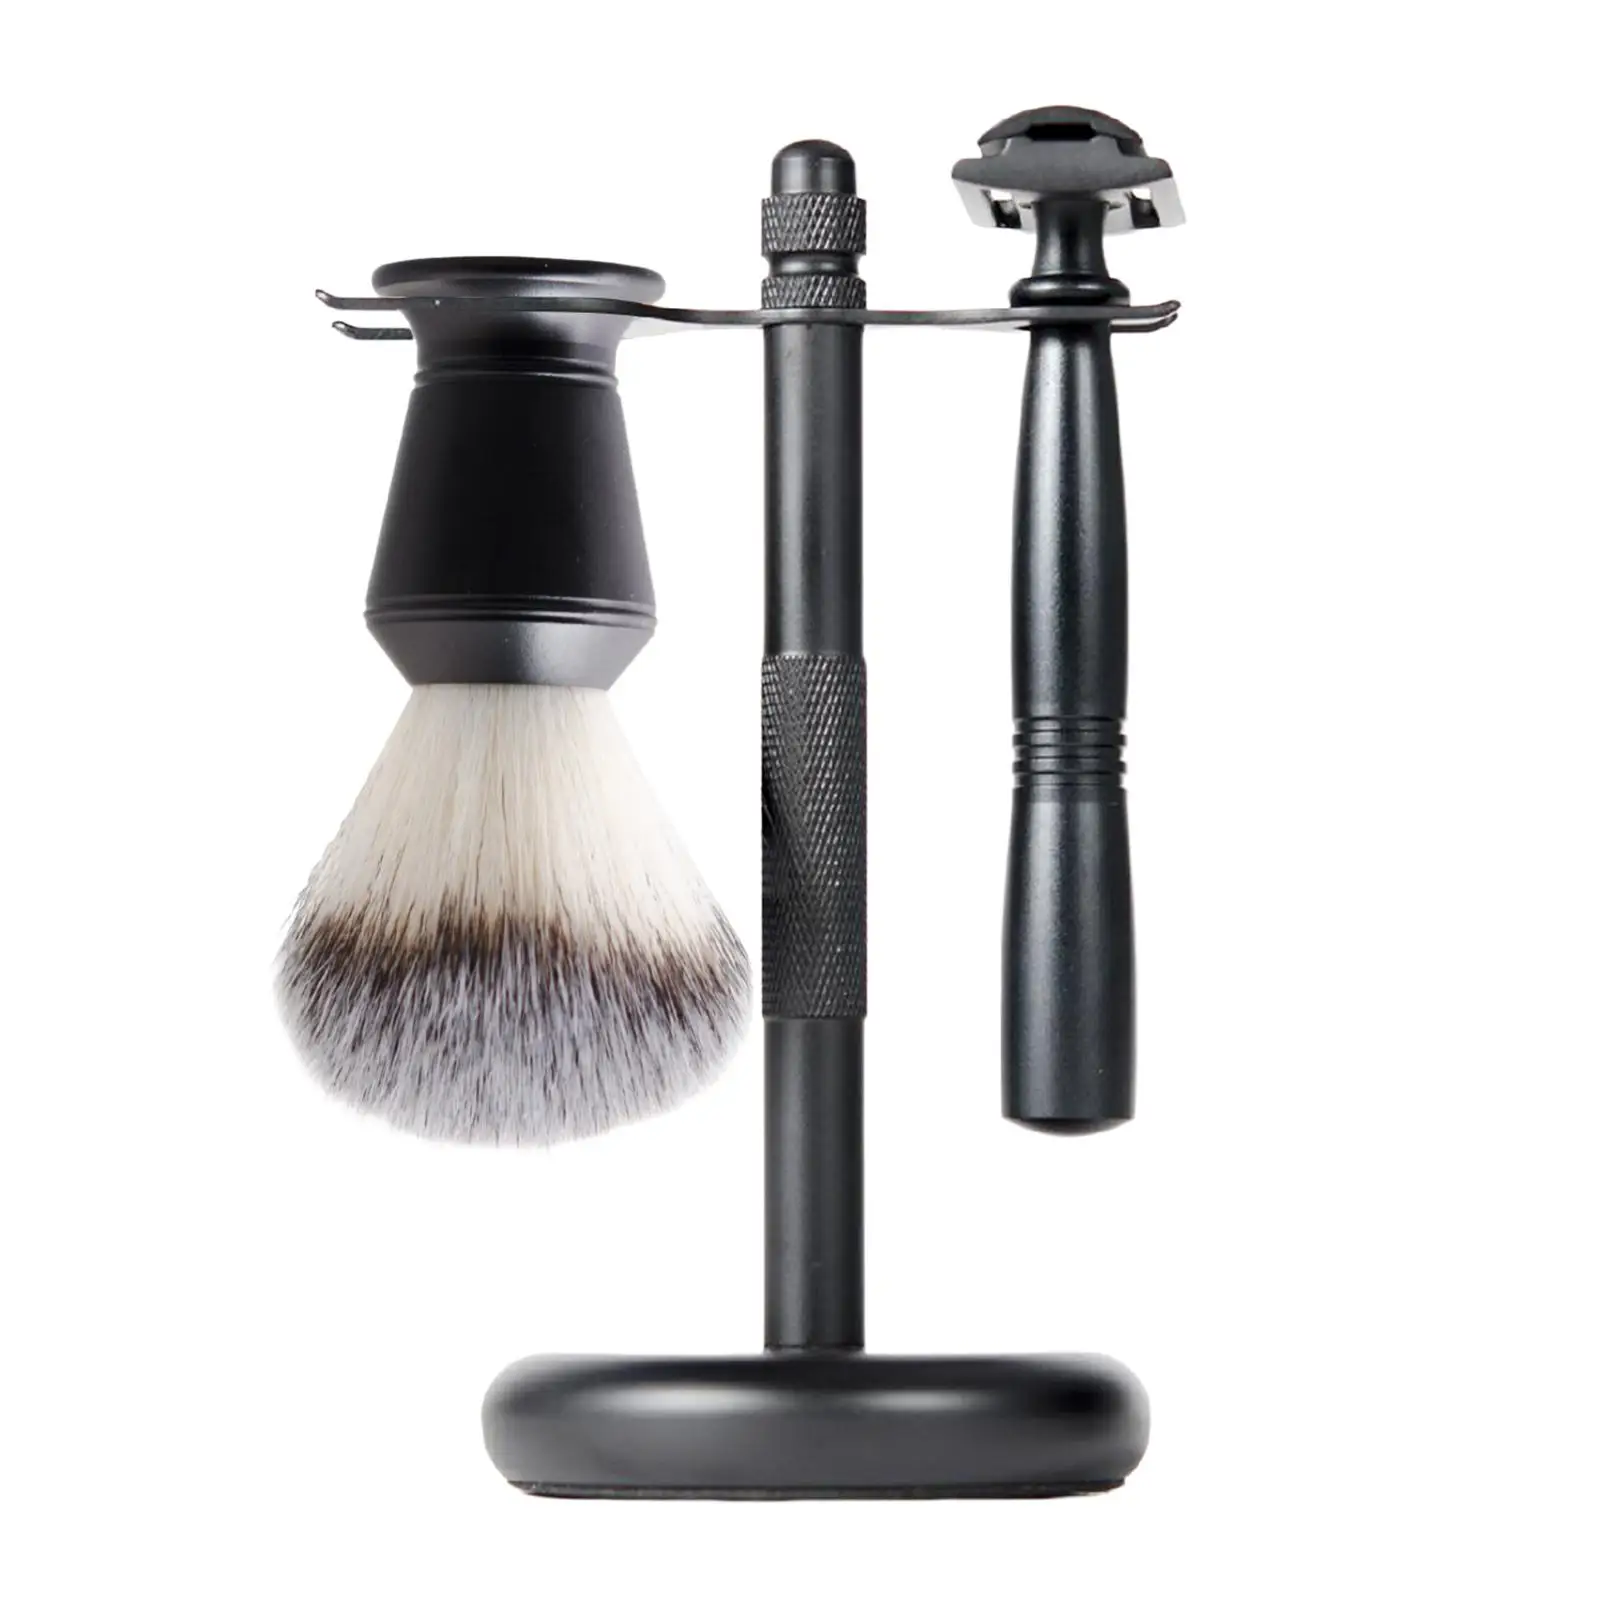 3x Shaving Set Black Color Elegant Shaving Brush Stand Set Shaving Razor+ Stand Holder +shaving Brush Set Father`s Day Gifts